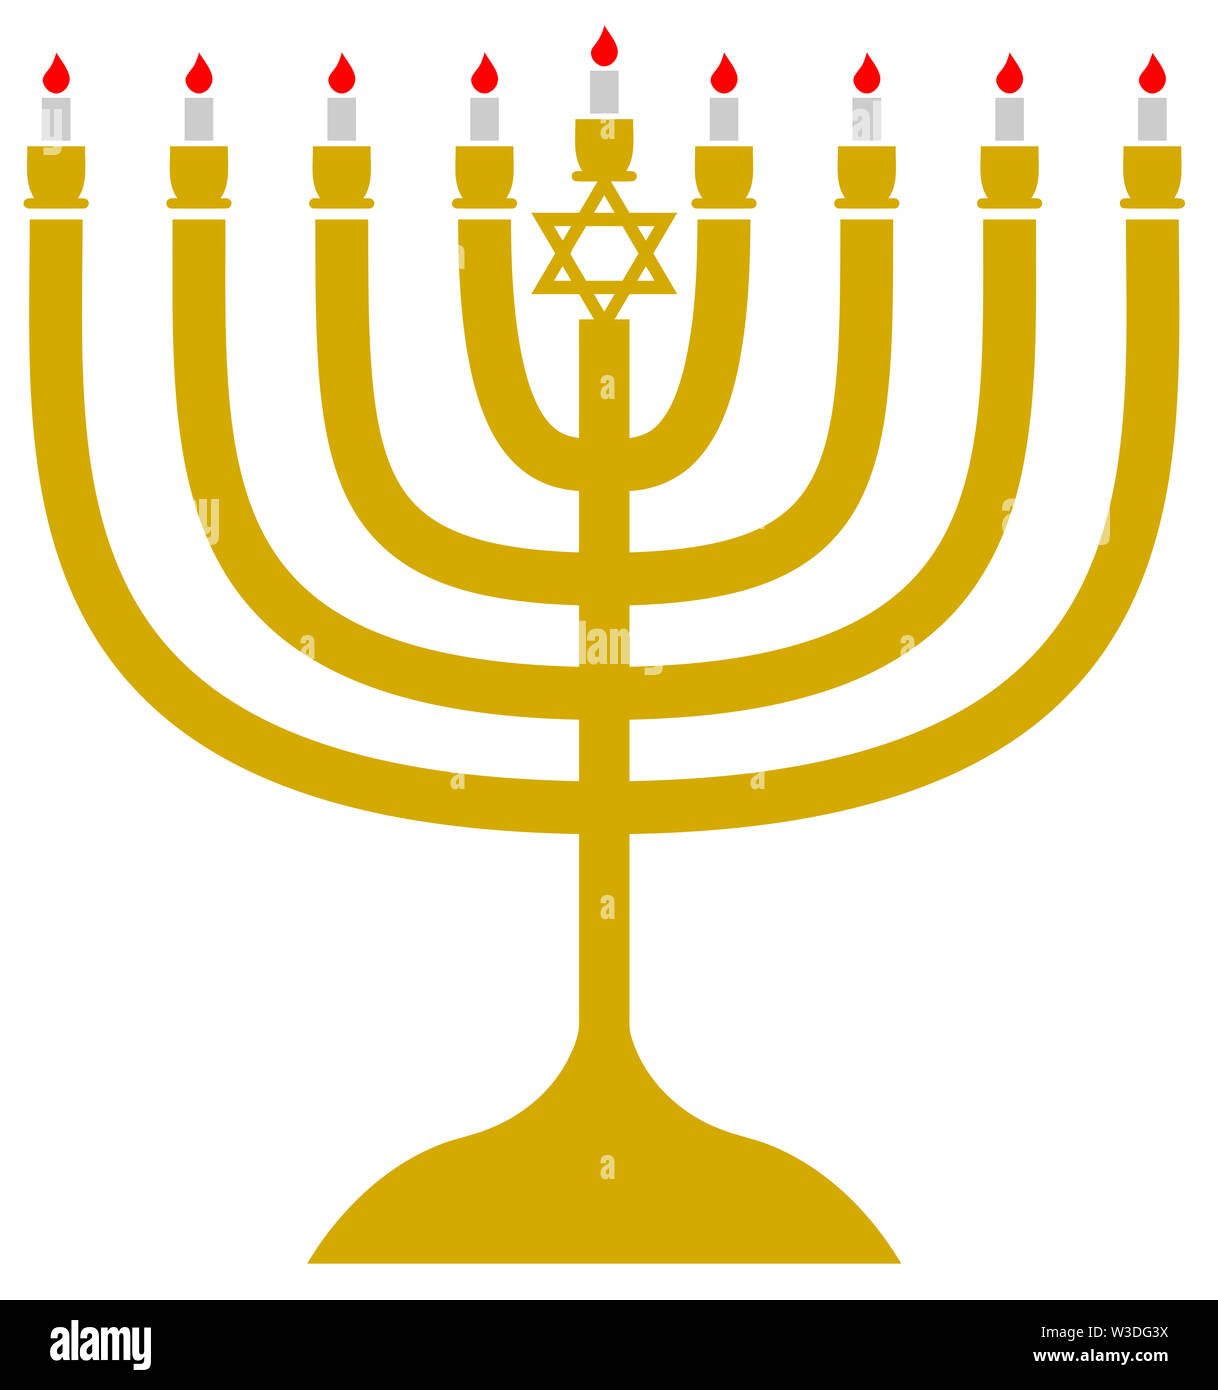 jewish judaism hanukkah candles golden illustration religious david  starjewish judaism hanukkah candles golden illustration religious david  star Stock Photo - Alamy